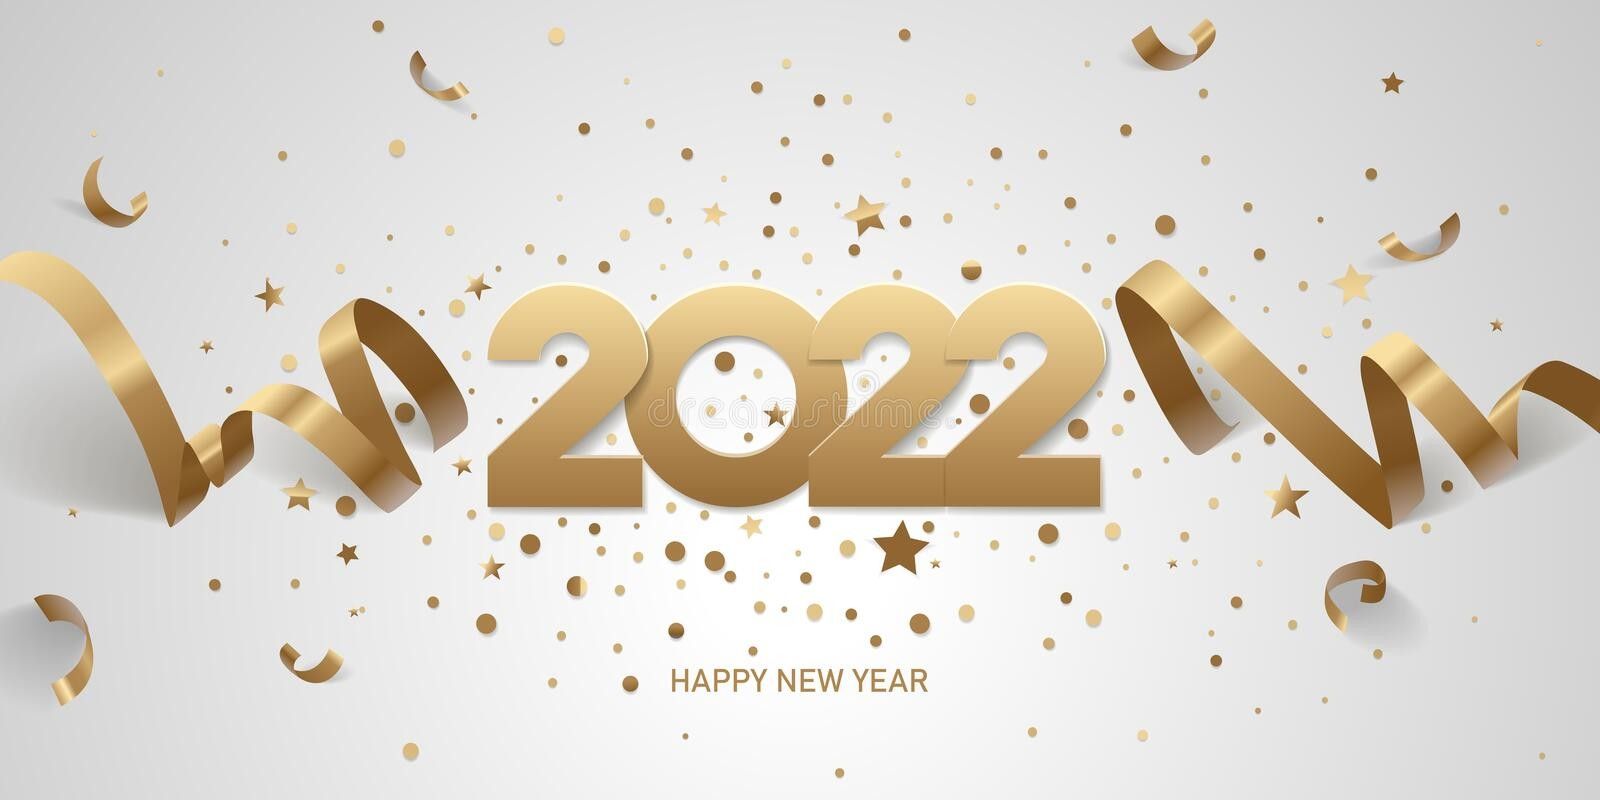 رسائل رأس السنة 2022 صور وبطاقات معايدة واجمل وأروع المسجات HAPPY NEW YEAR  2022